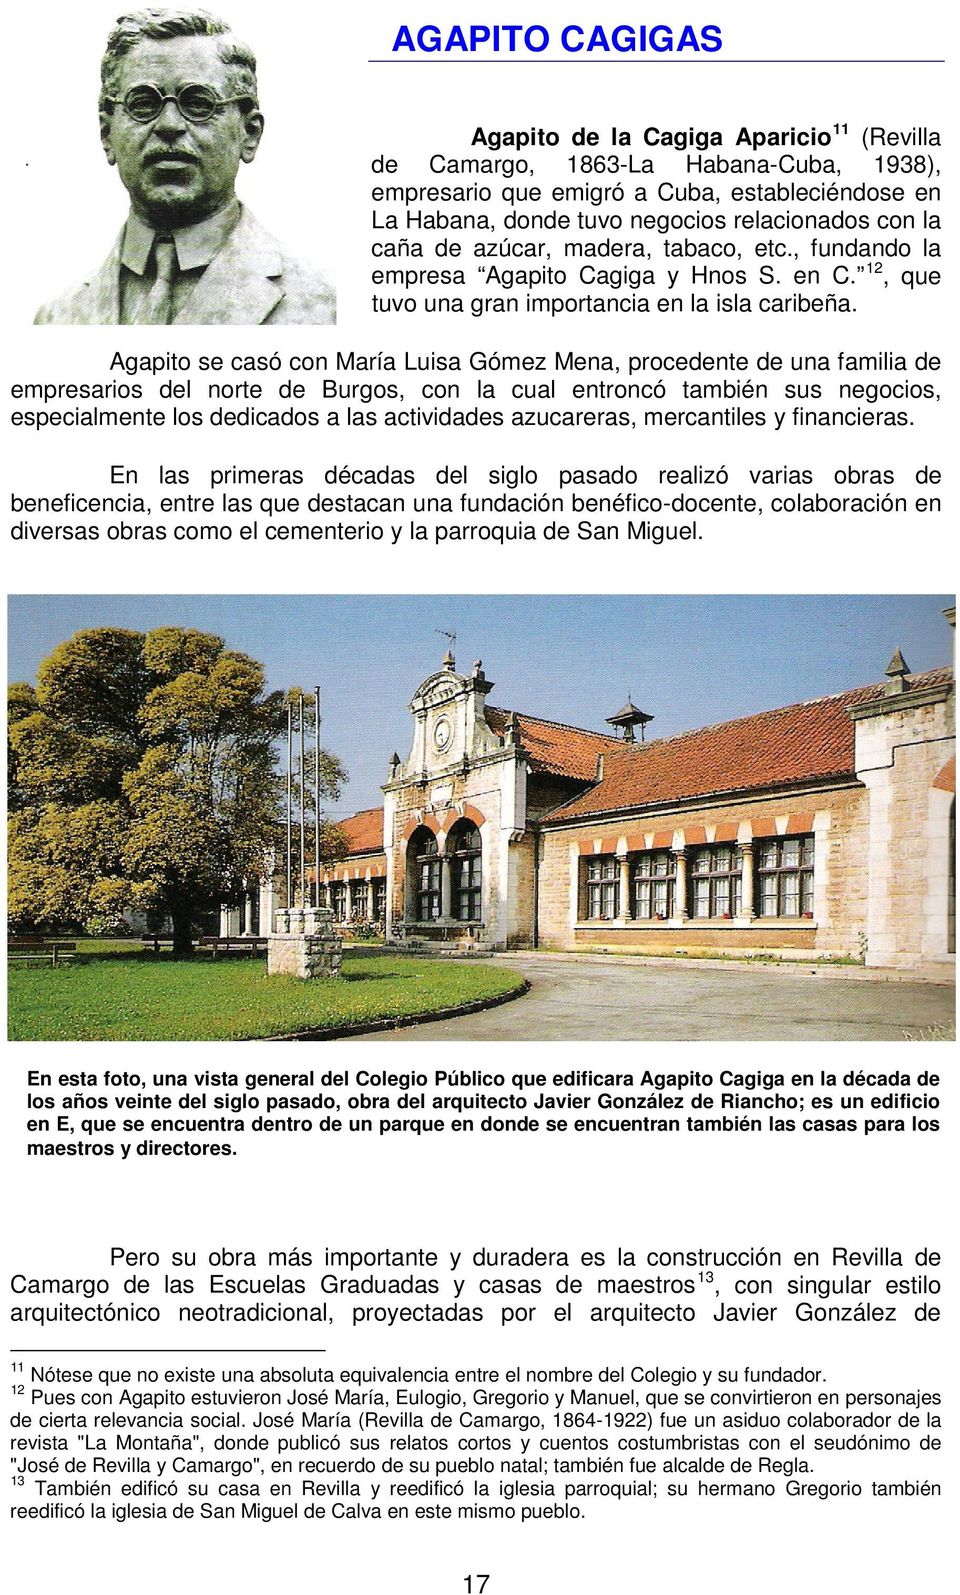 Agapito se casó con María Luisa Gómez Mena, procedente de una familia de empresarios del norte de Burgos, con la cual entroncó también sus negocios, especialmente los dedicados a las actividades